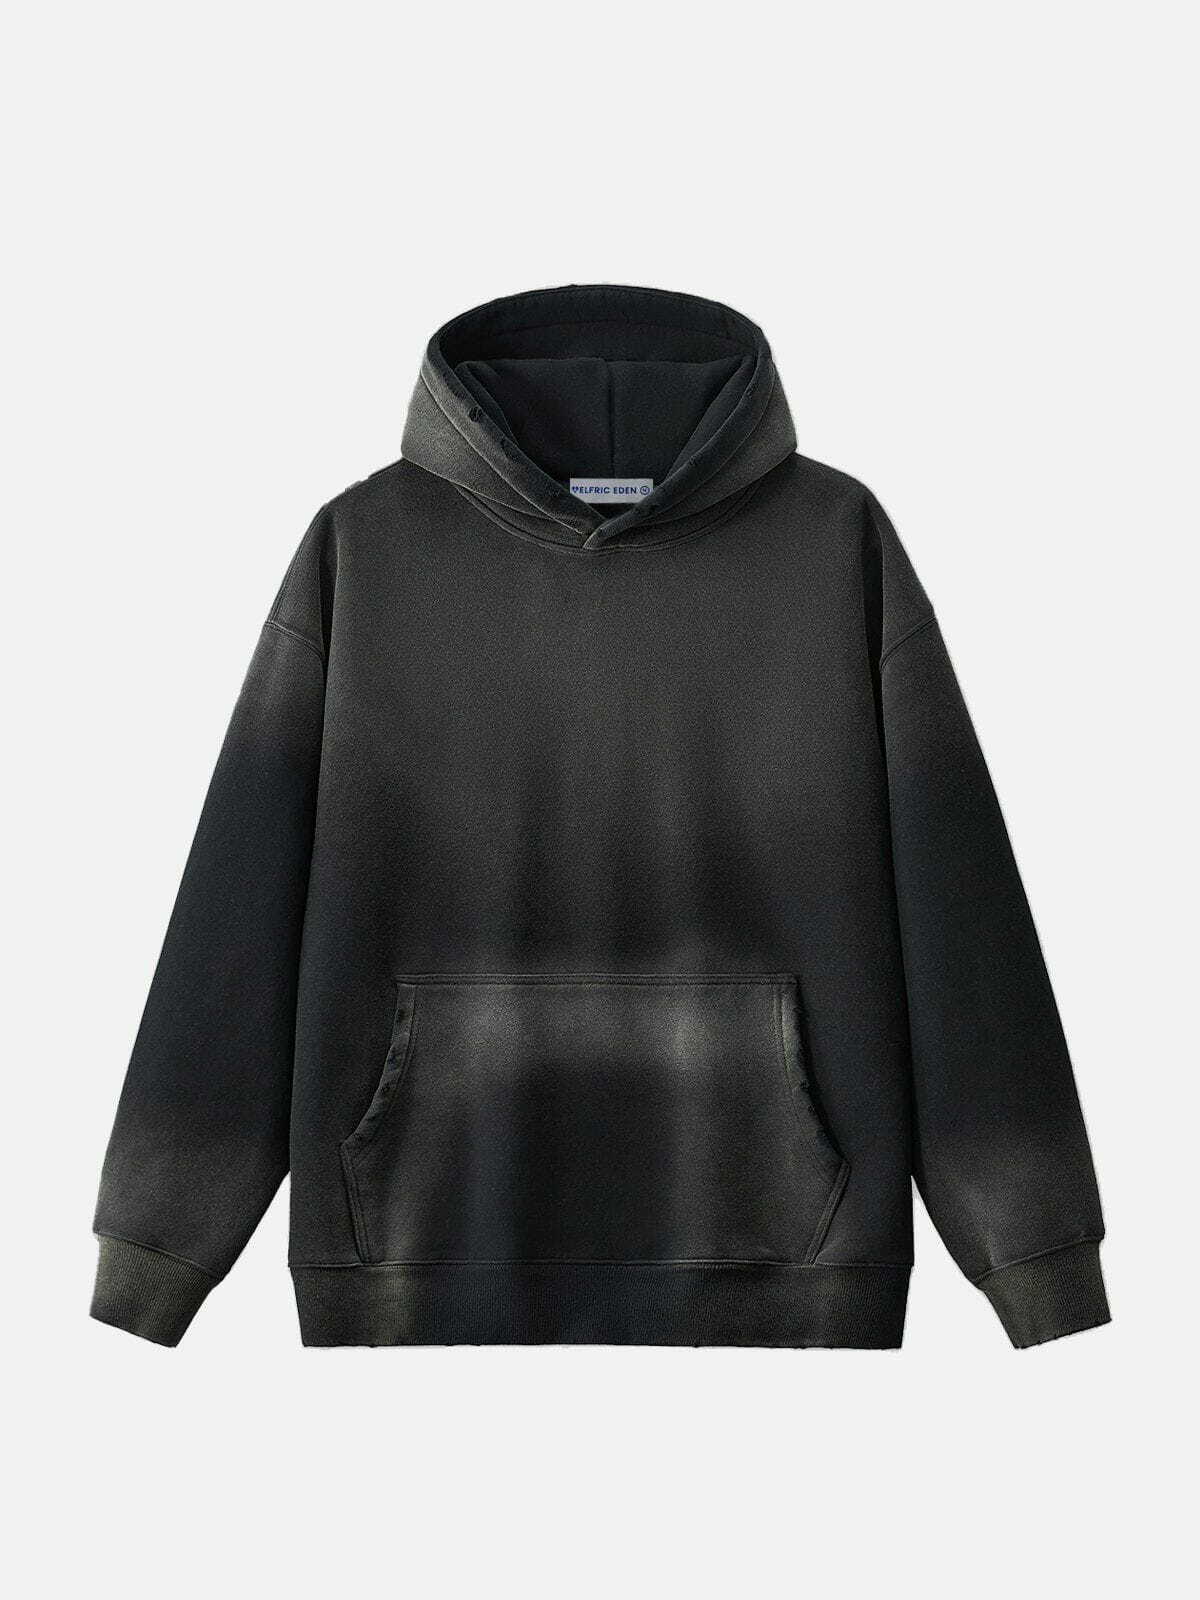 gradient washed hoodie urban streetwear essential 6553